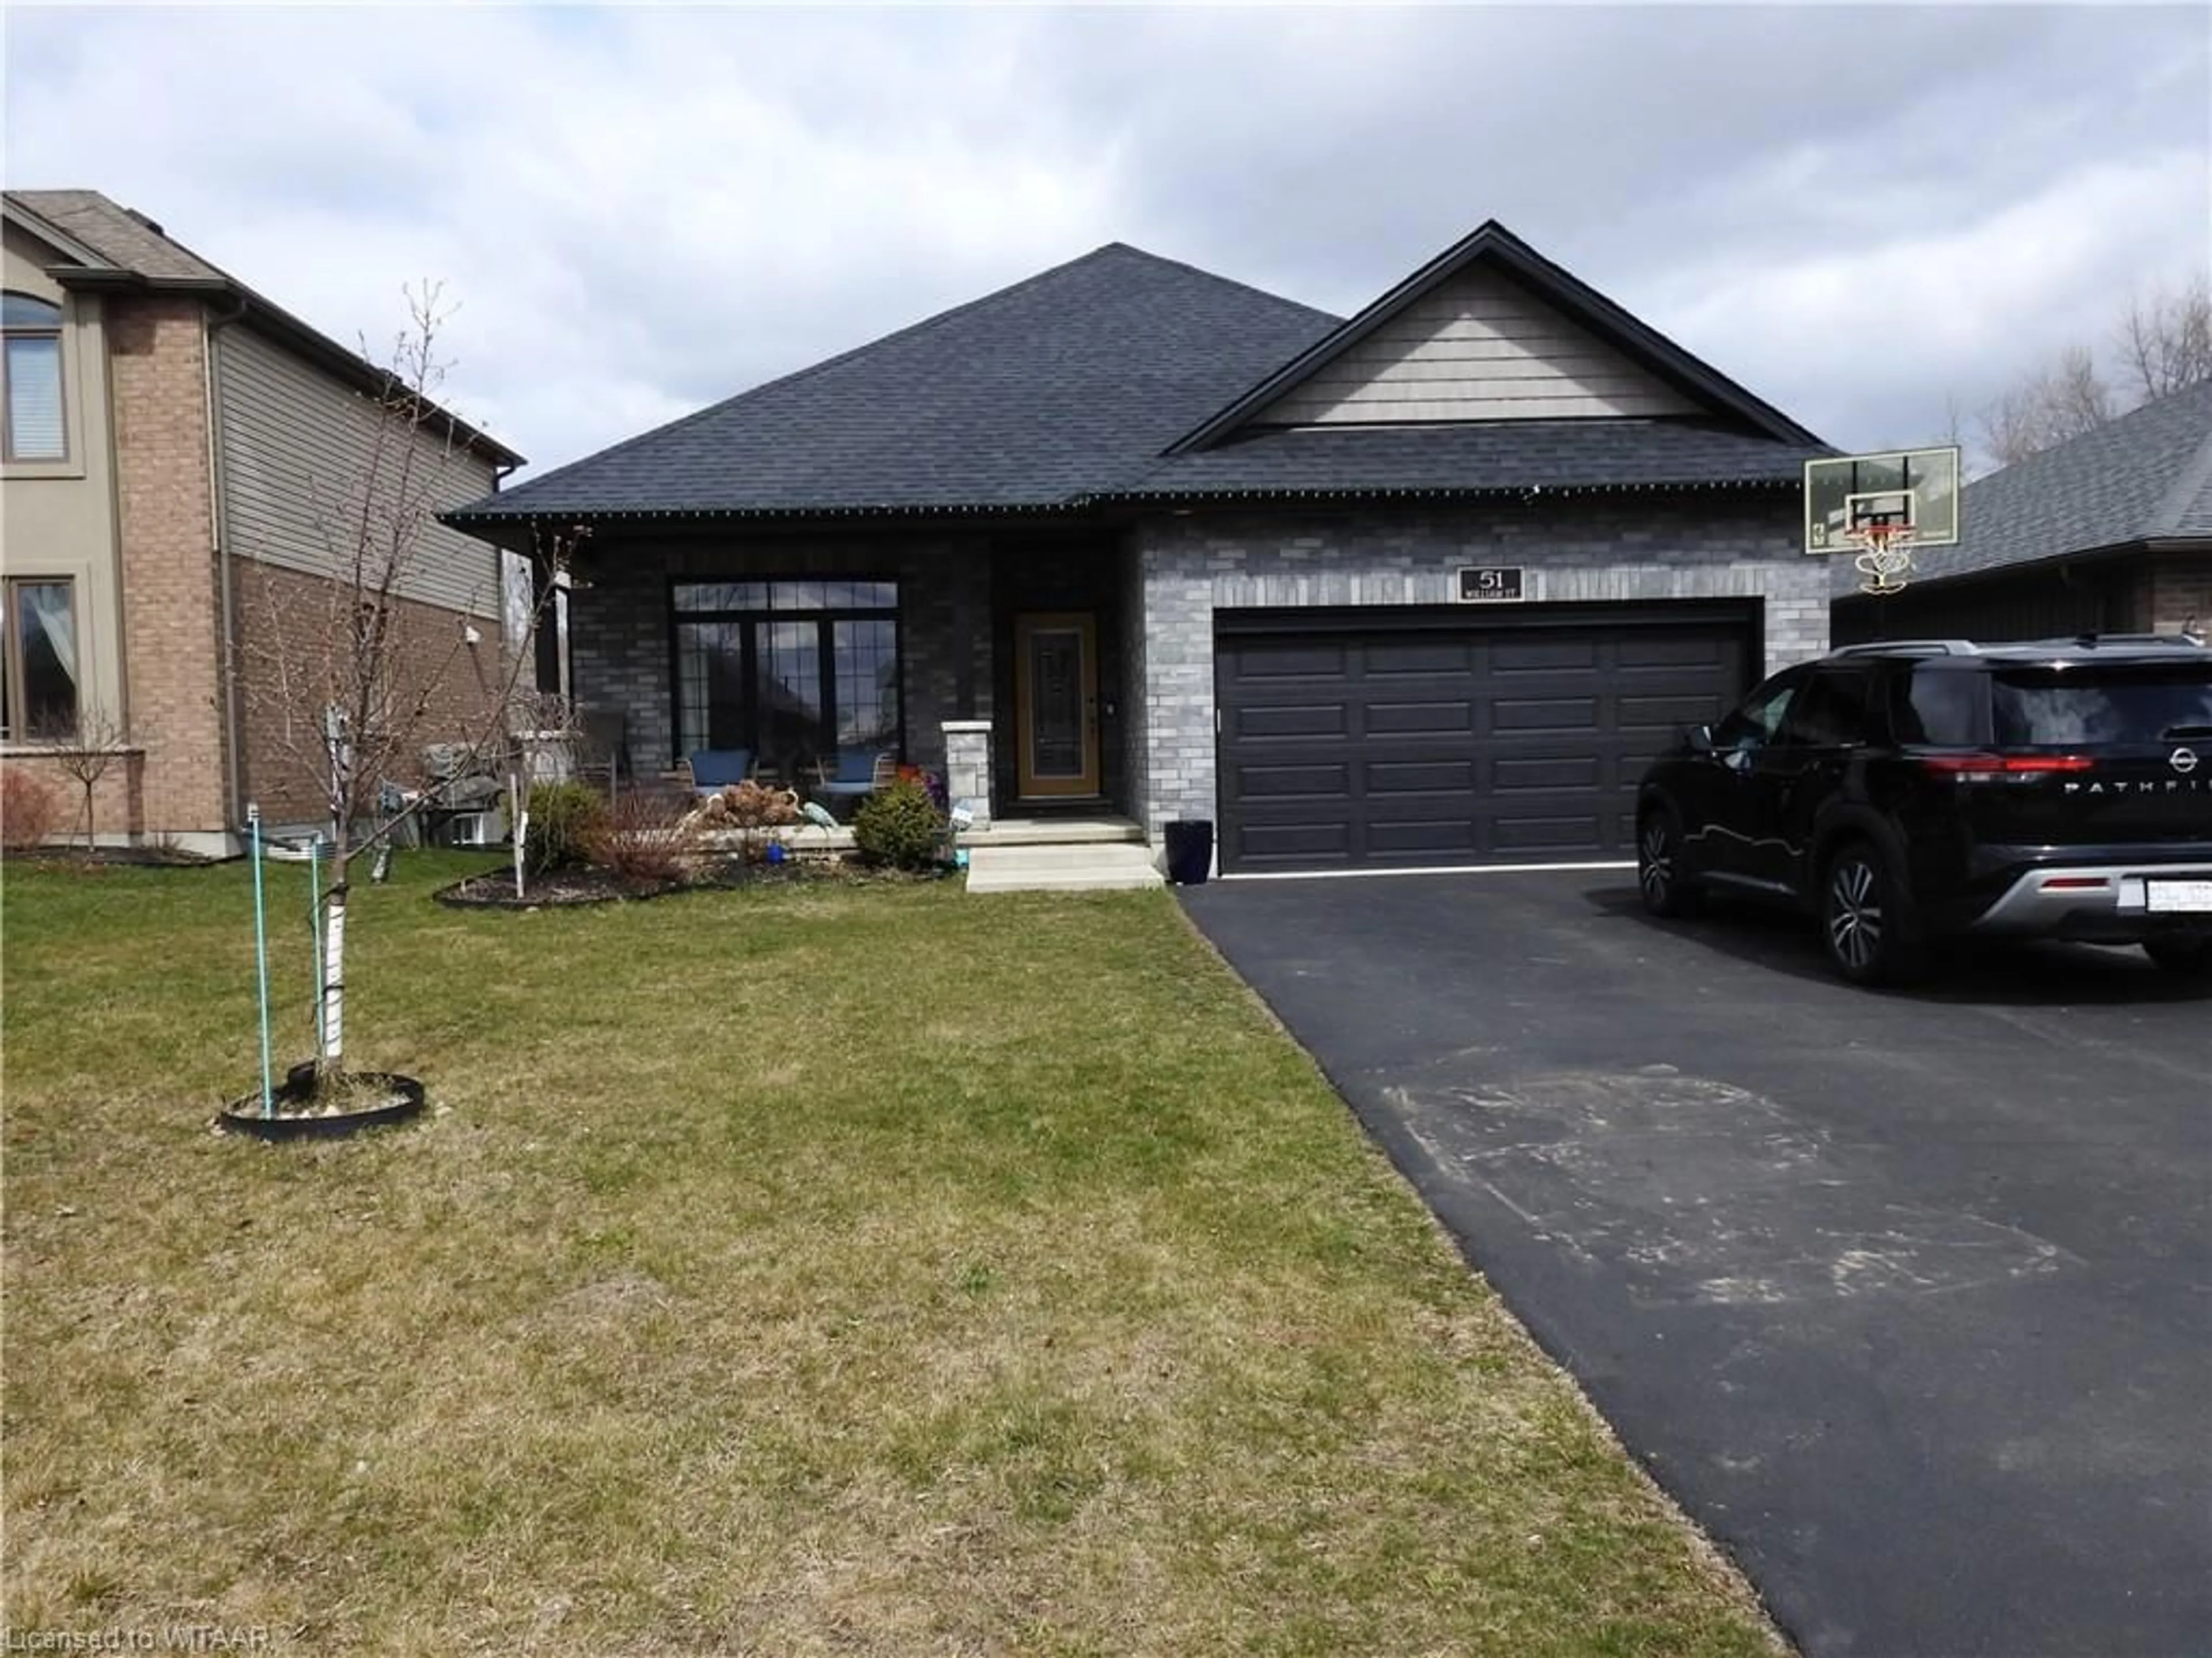 Frontside or backside of a home for 51 William St, Tillsonburg Ontario N5G 5R9